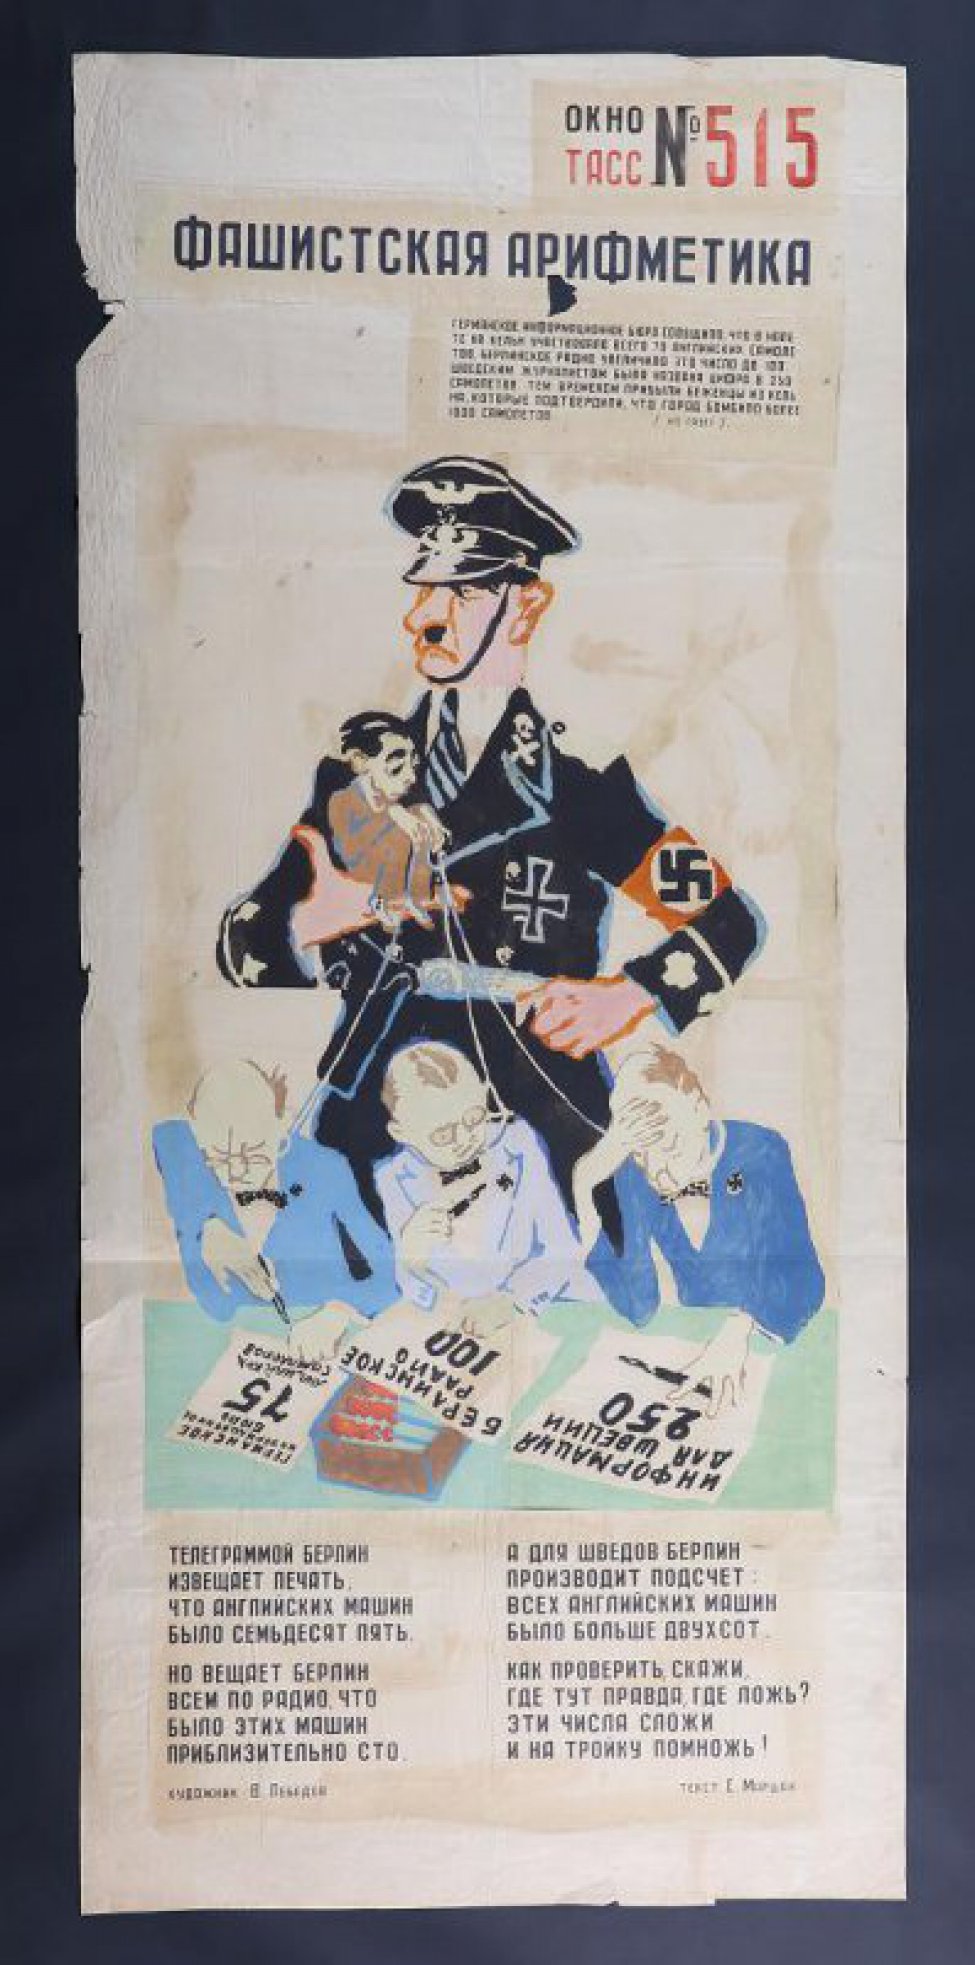 Изображен Гитлер, держащий в руке Геббельса, который за веревочки держит 3-х представителей Германского информбюро, текст С.Маршак: " Телеграммой Берлин , извещает печать..."